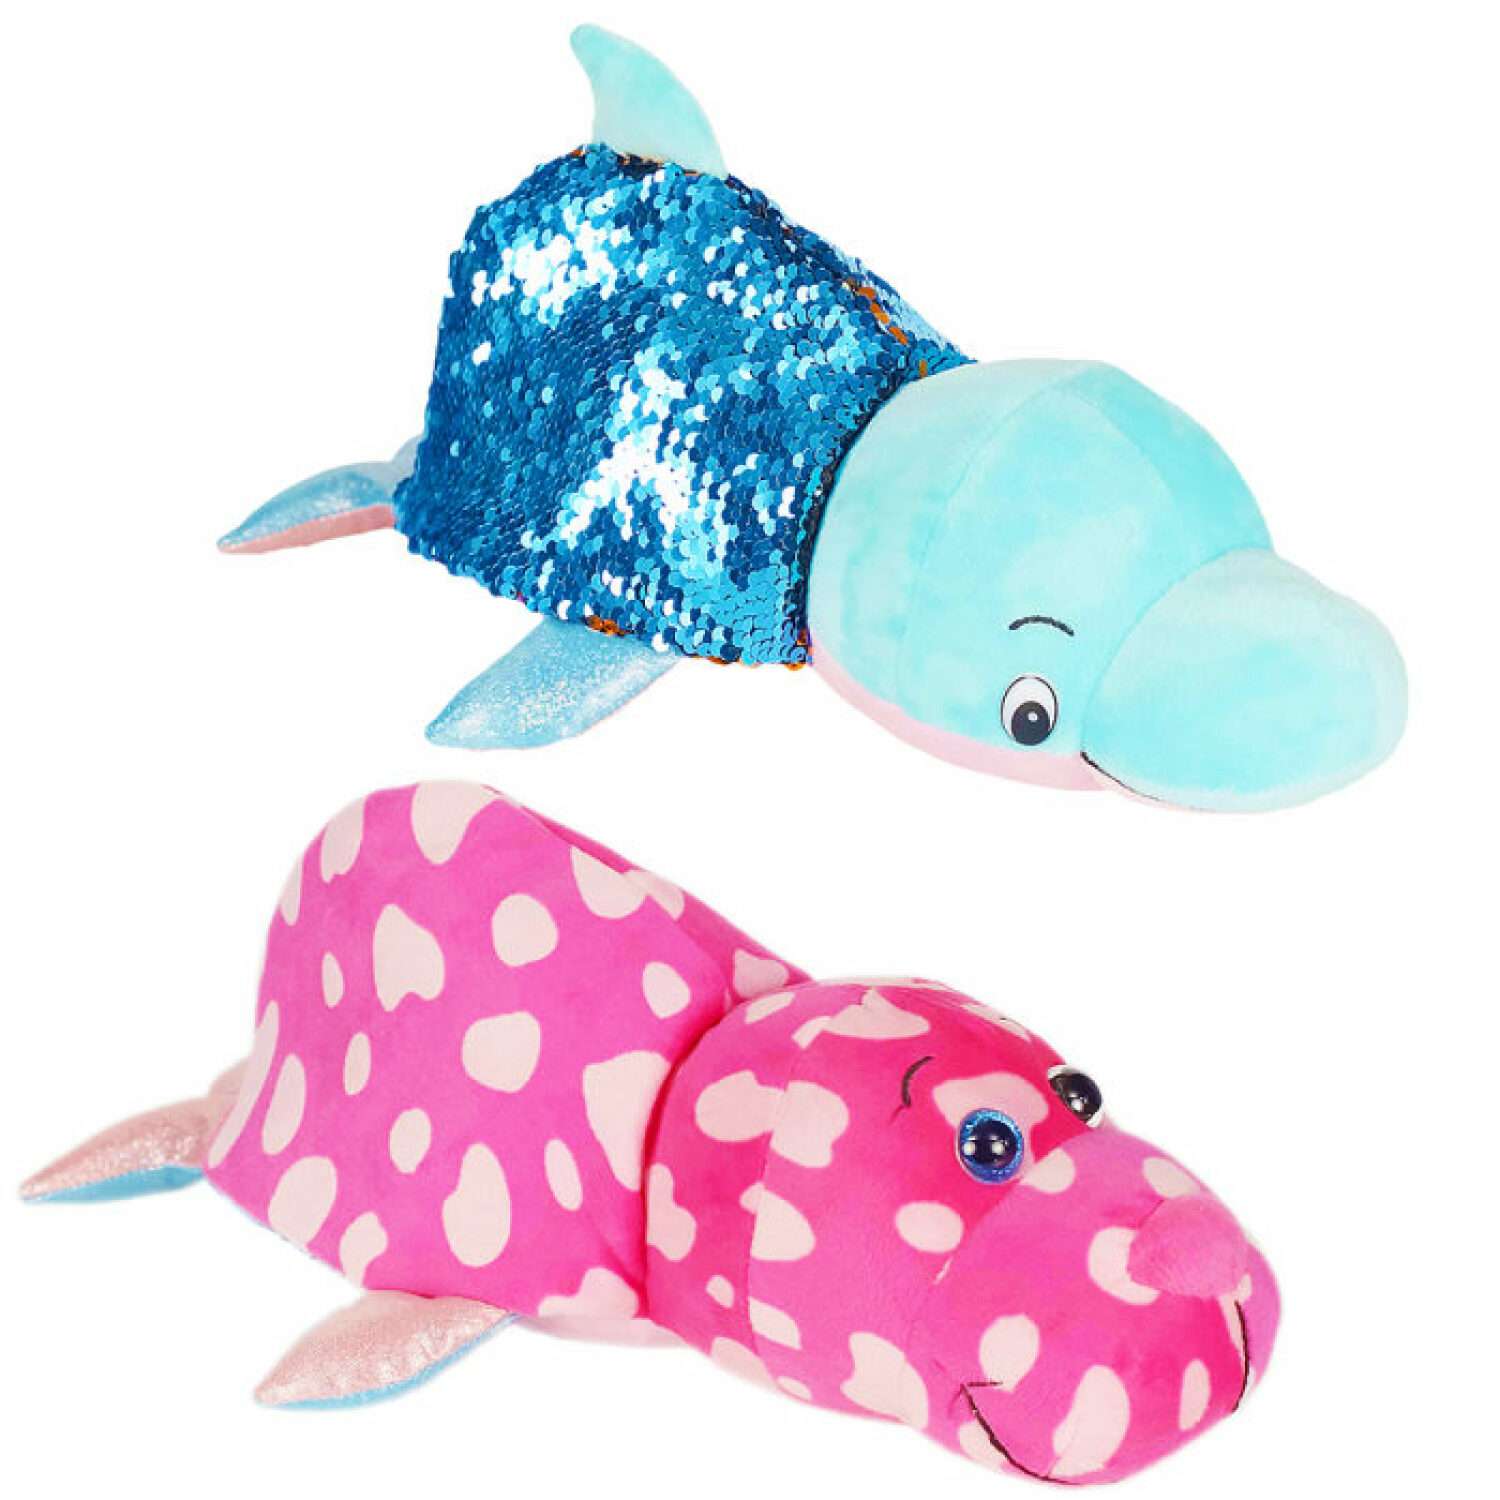 Мягкая игрушка Вывернушка Блеск с пайетками Розовый Моржик голубой Дельфин 30см - фото 1